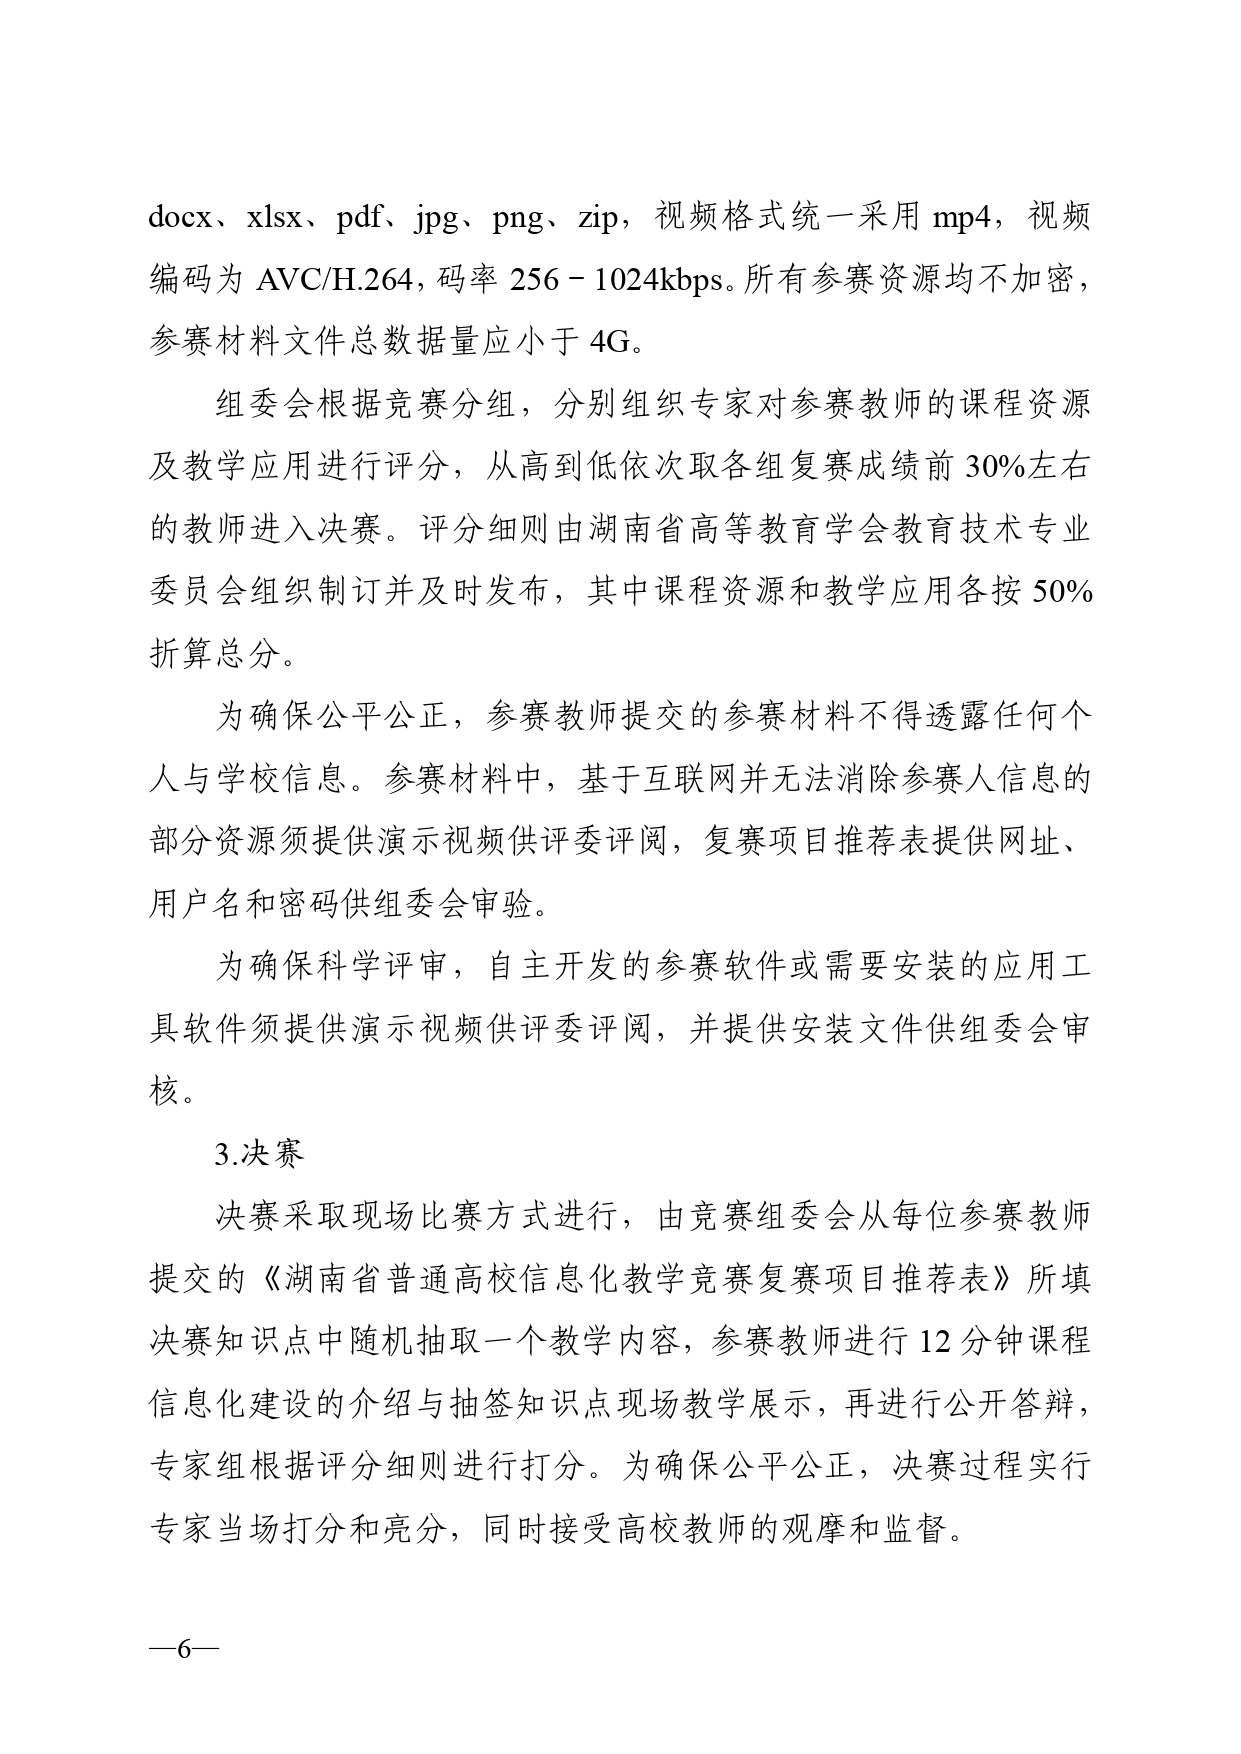 关于开展2023年湖南省普通高校教师信息化教学竞赛的通知正文(1)_page-0006.jpg